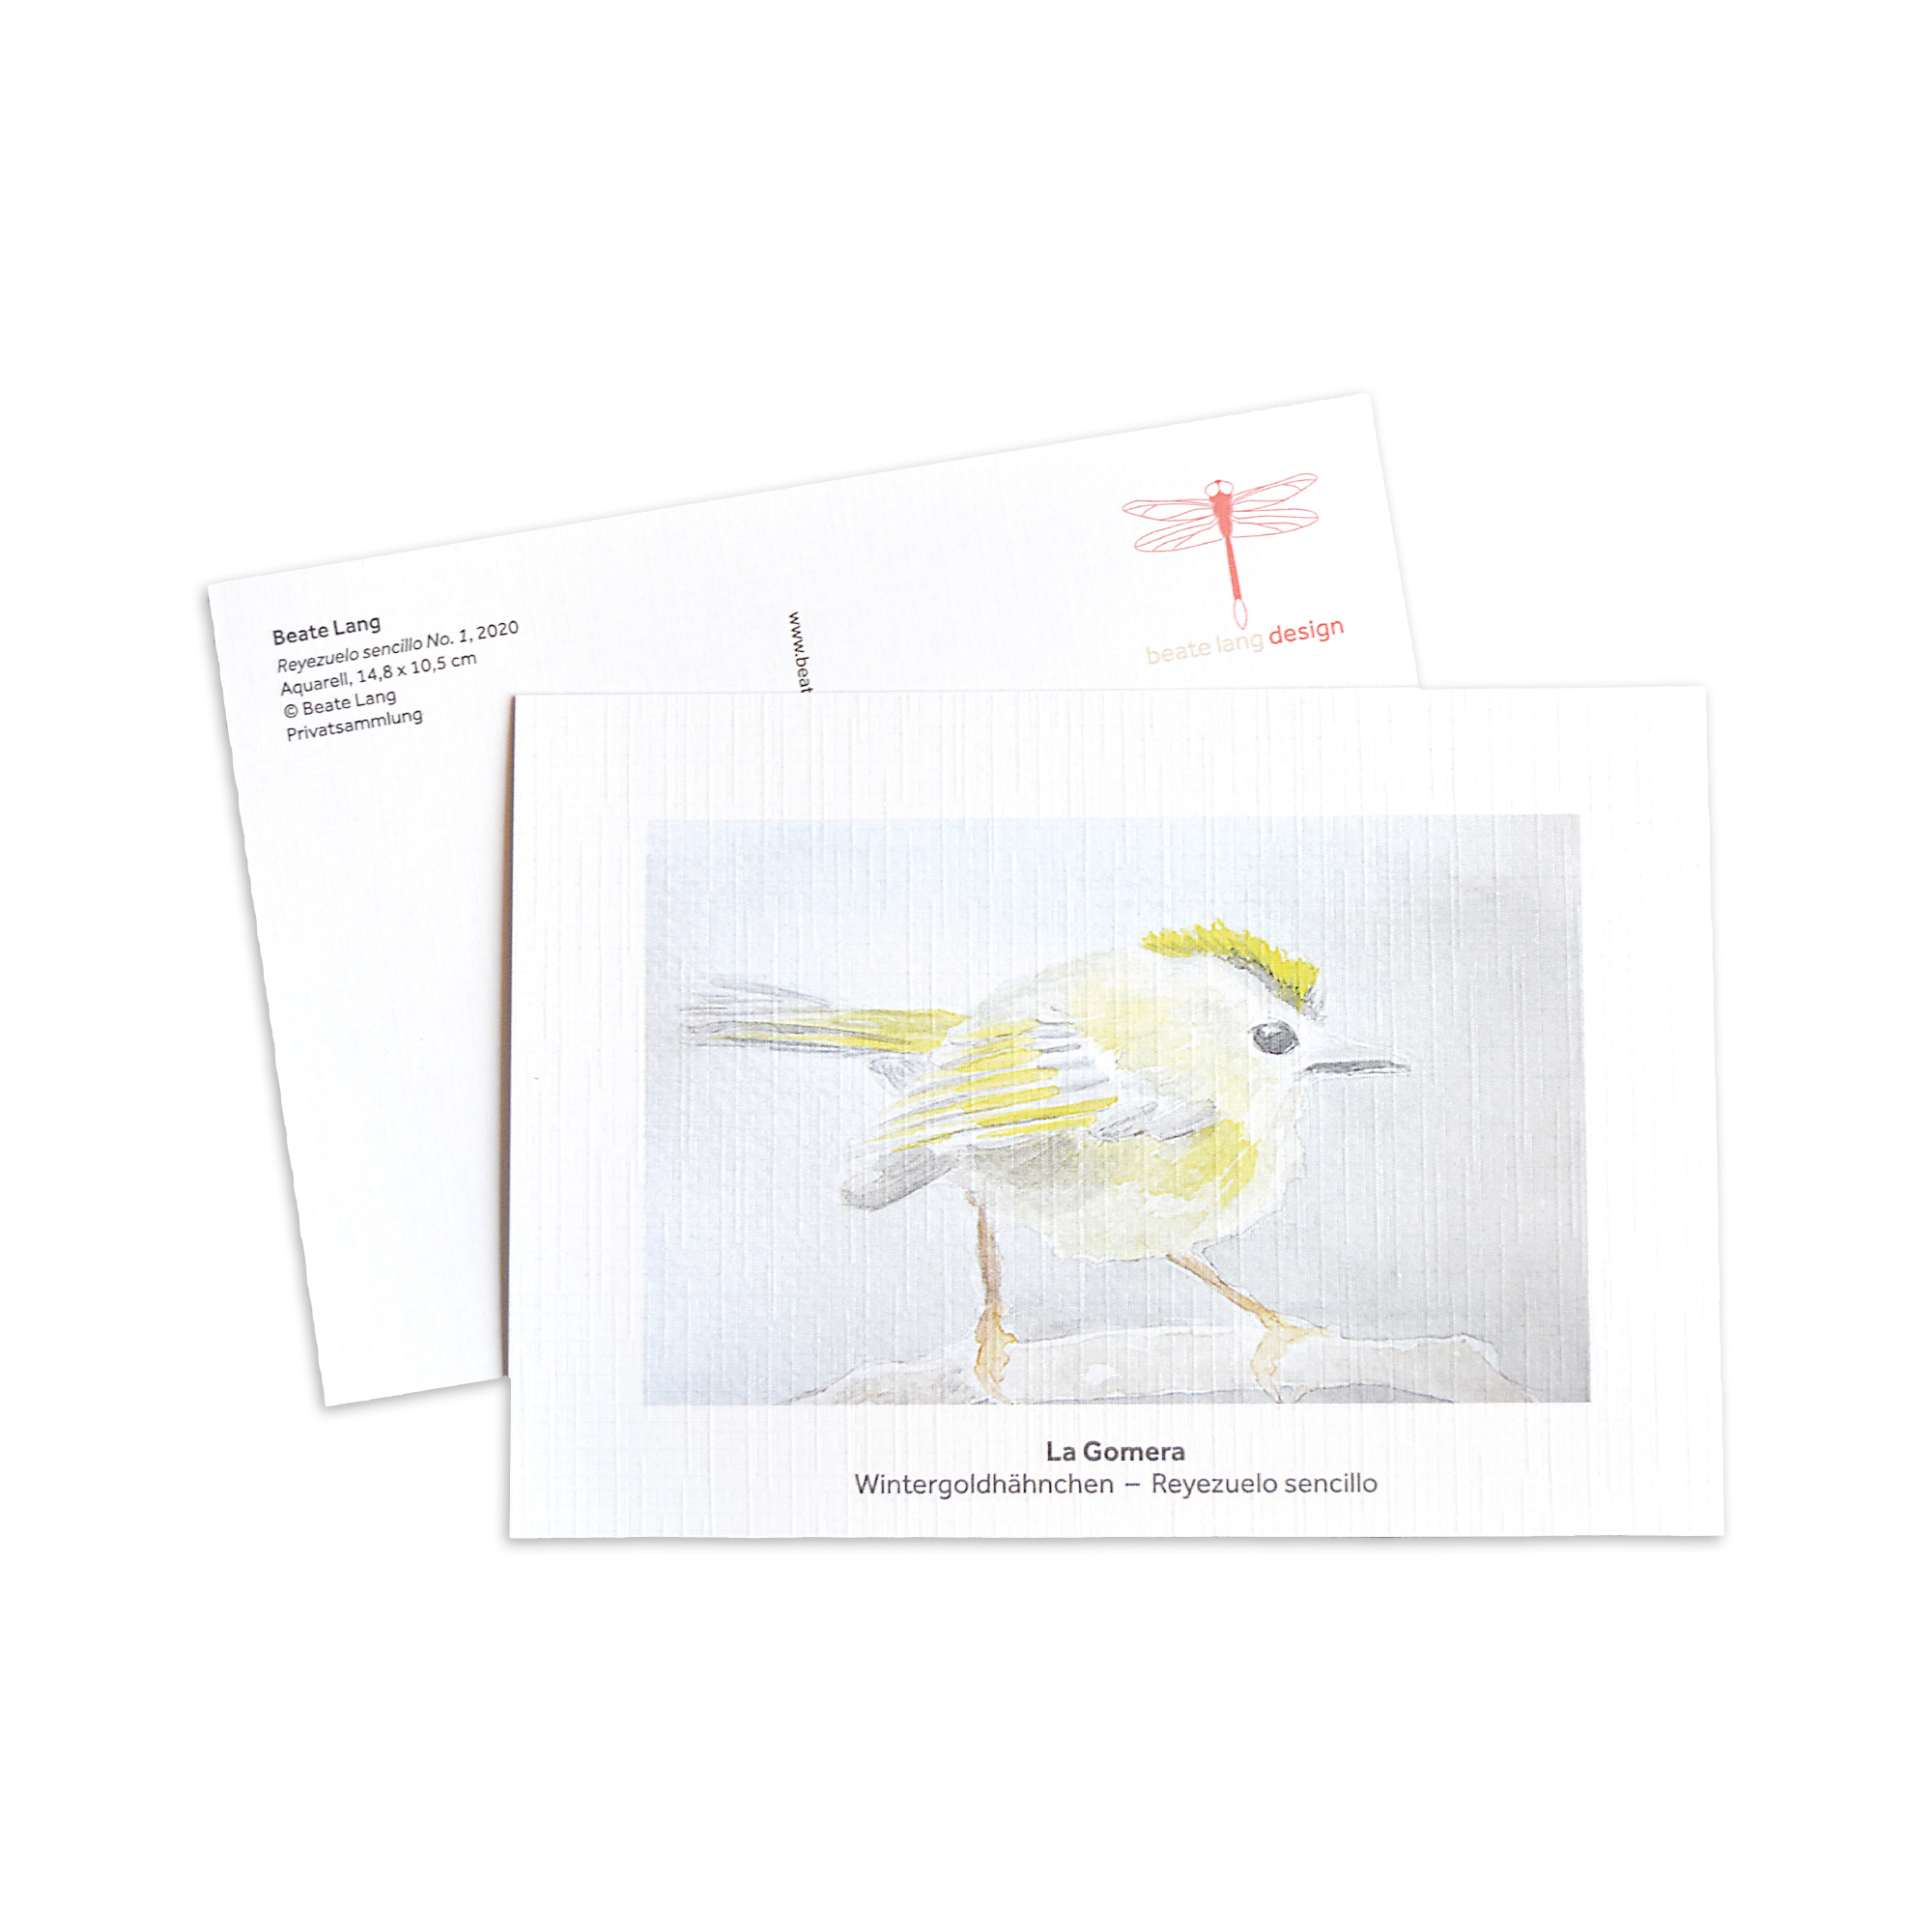 Kunstpostkarten mit Kunstdrucken von Vogelaquarellen